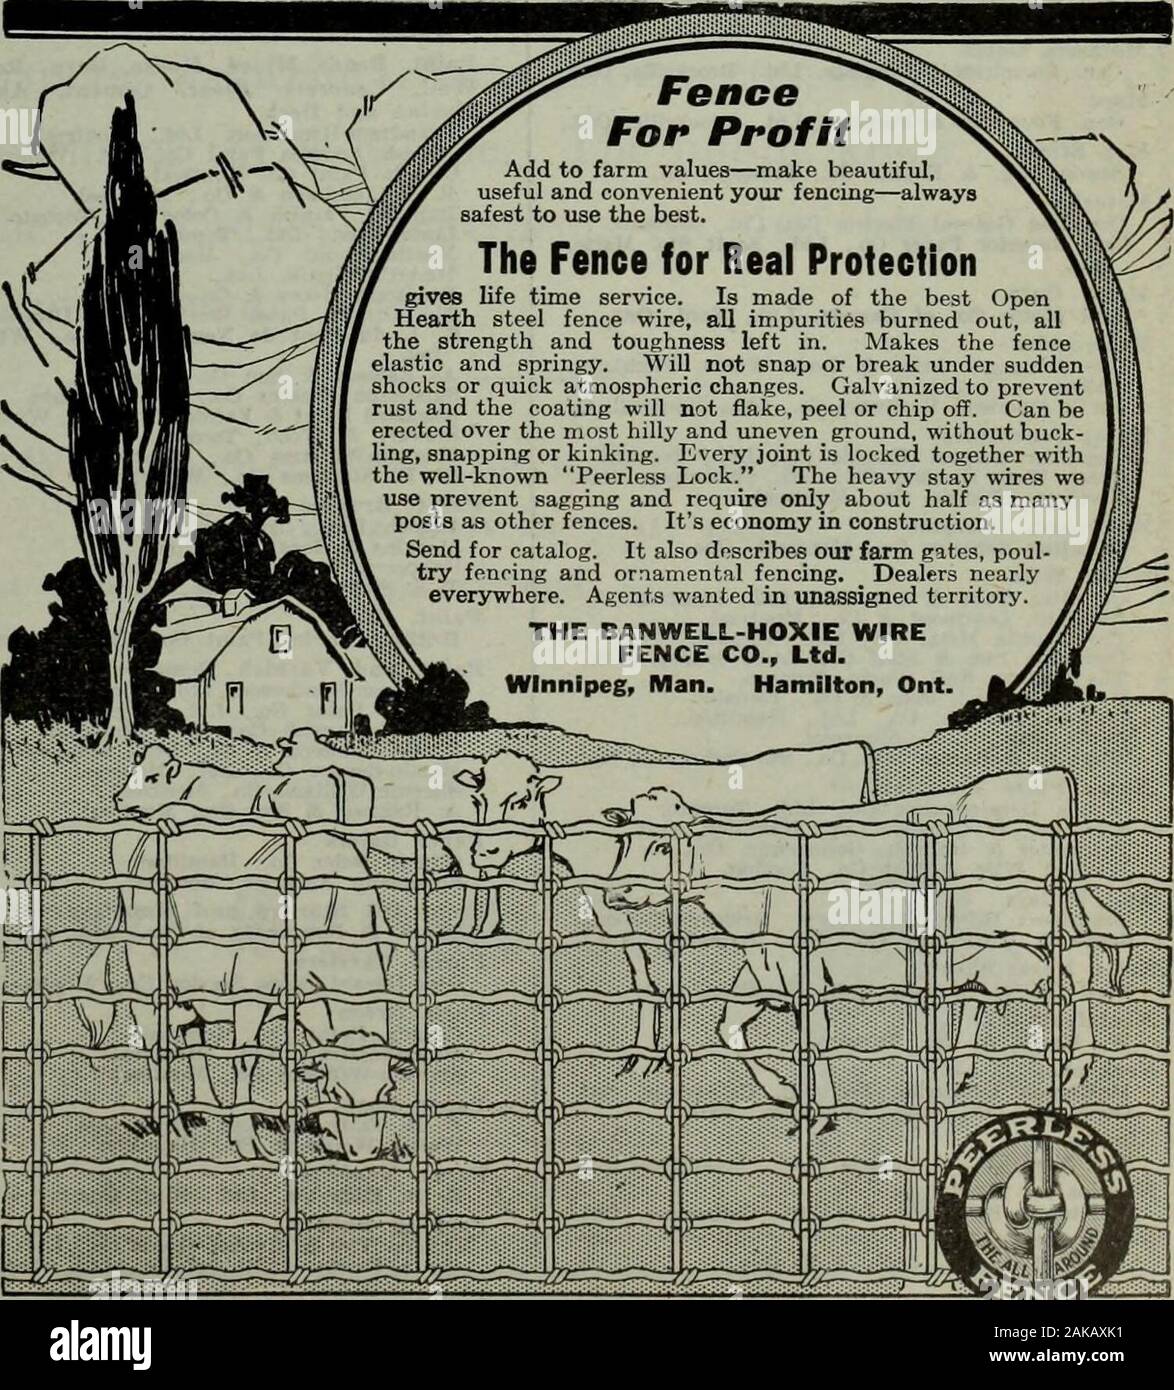 Hardware merchandising September-dezember 1919. tine Co., Ltd.. Toronto, oniMatches E. B. Eddy Co., Hull. Que Matten. Dunlop Reifen und Gummi waren. Ich Id r.r,.. M-^s. FlexibleTOe Port Hope Mat ft Mfg. Co., Port Hope. Ont Mauls kann Fnnndri" "ft f^rgir., der Whitman ft Barnes Mfg. Co., St. Catharines. (Roh Oktober 25, 1919 HARDWARE- UND METALL-Abschnitt Werbung 95/Alex. McArthur & Co., Ltd., MARKE 82 McGill University Street Montreal, Kanada BLACK DIAMOND GETEERT FILZE und Ummantelungen bei unseren ownPaper Mühlen. Sparen KOHLE DURCH GEBÄUDE PAPIER HARDWA REAND METALL ist nun der einzige weeklyhardware p Stockfoto